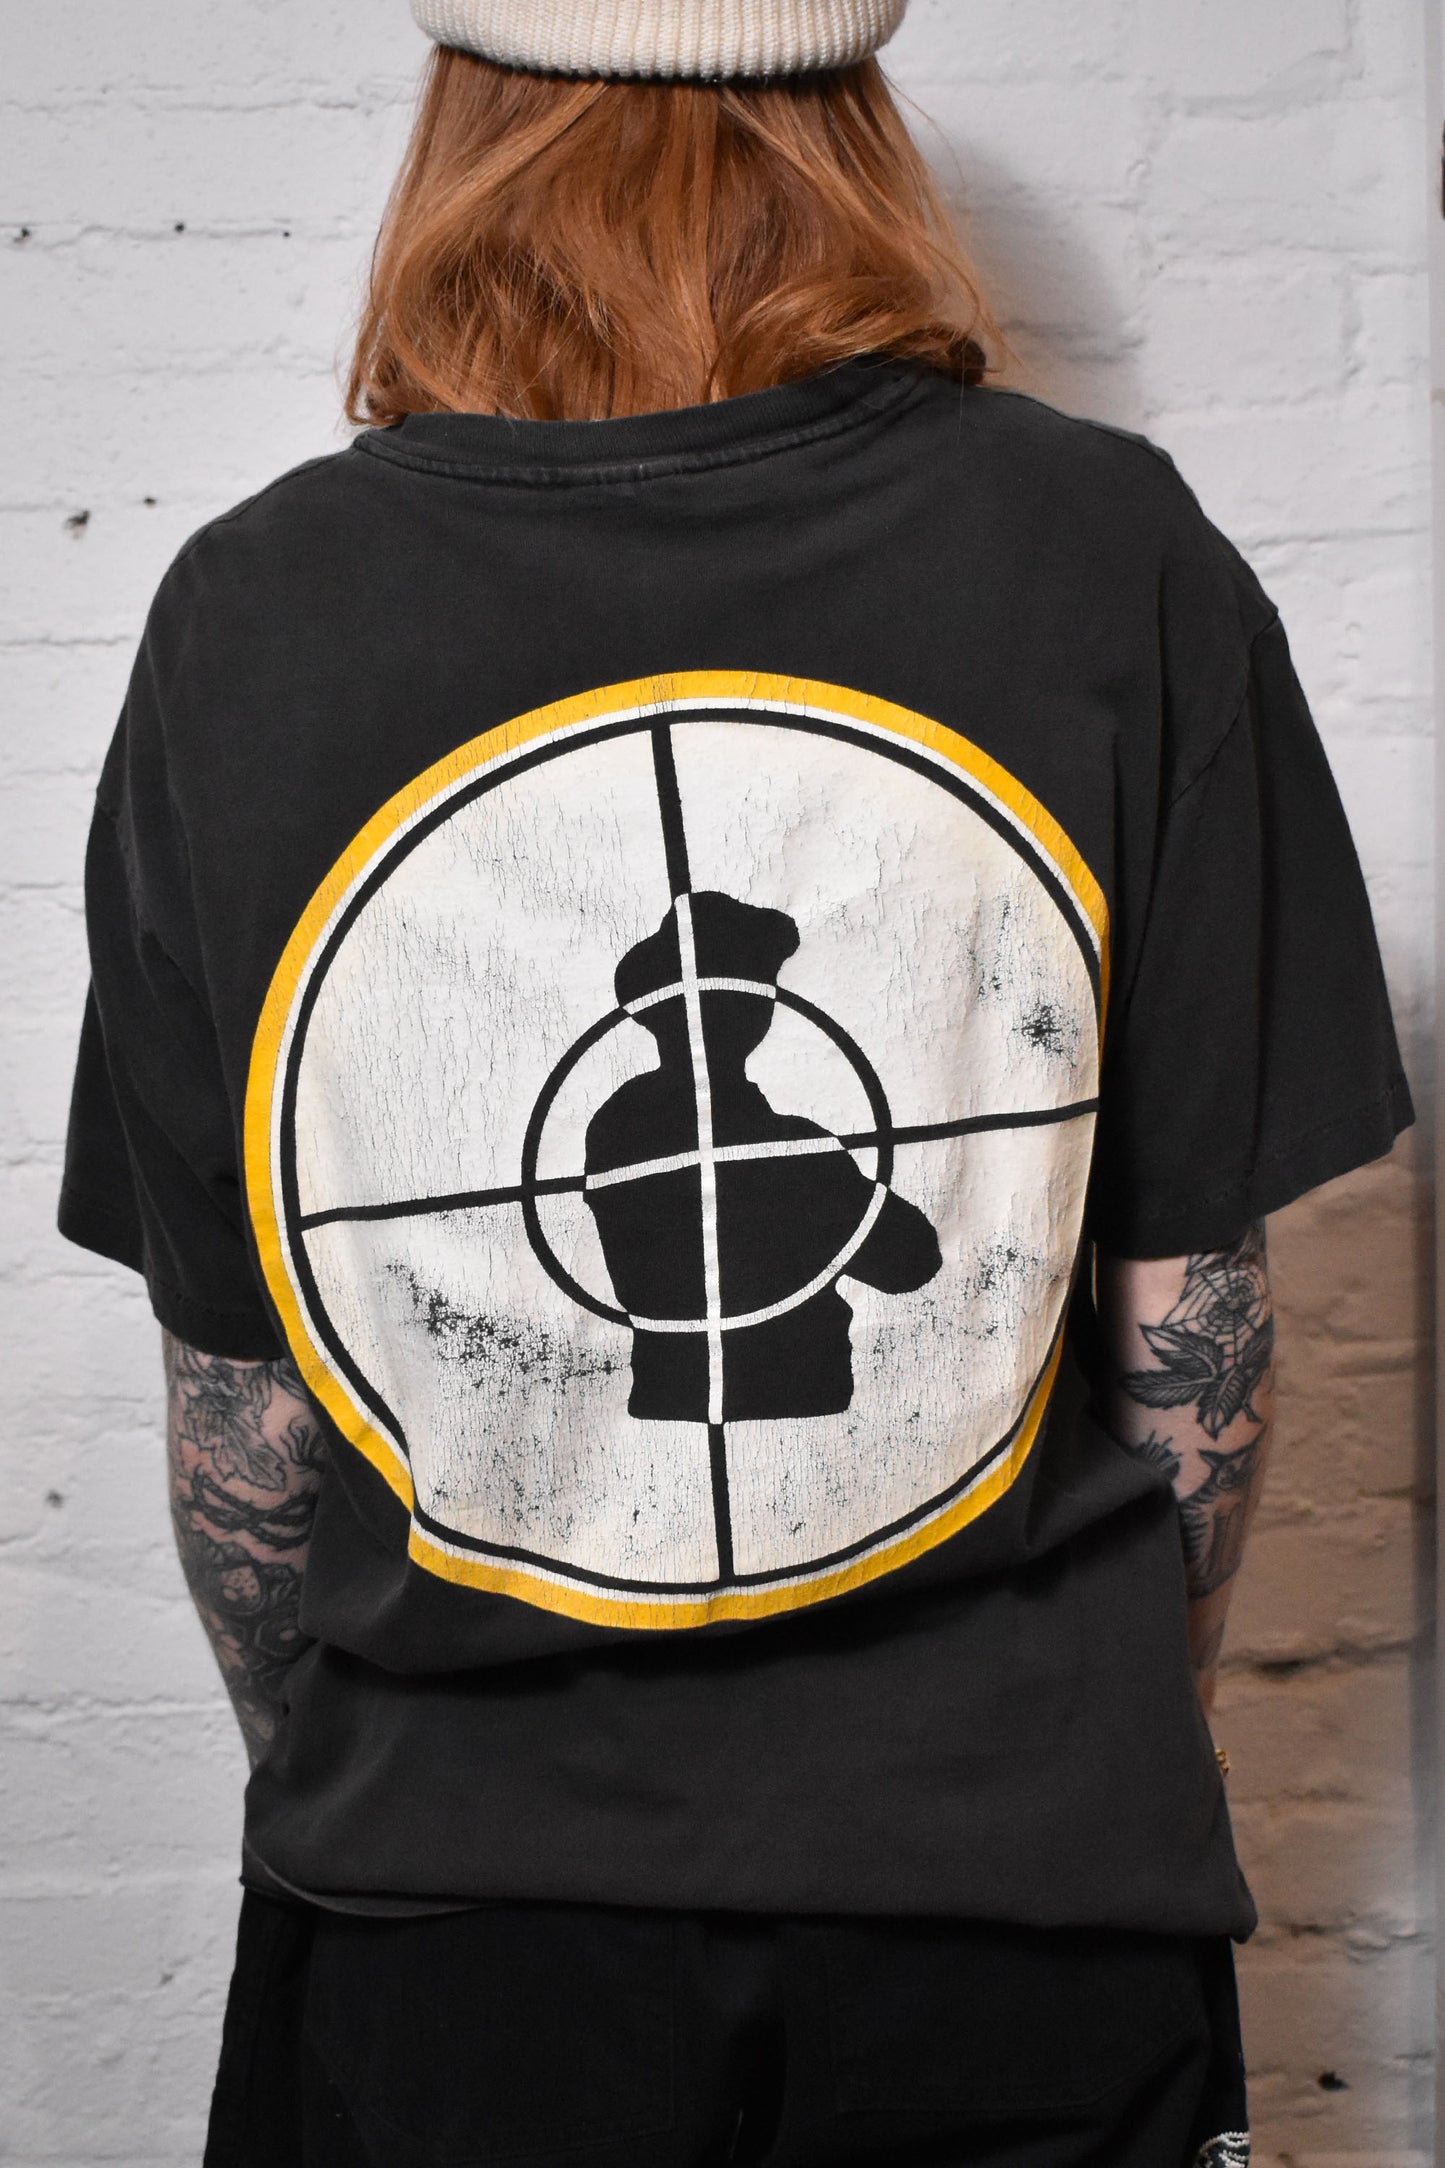 Vintage 1990s "Public Enemy" T-shirt